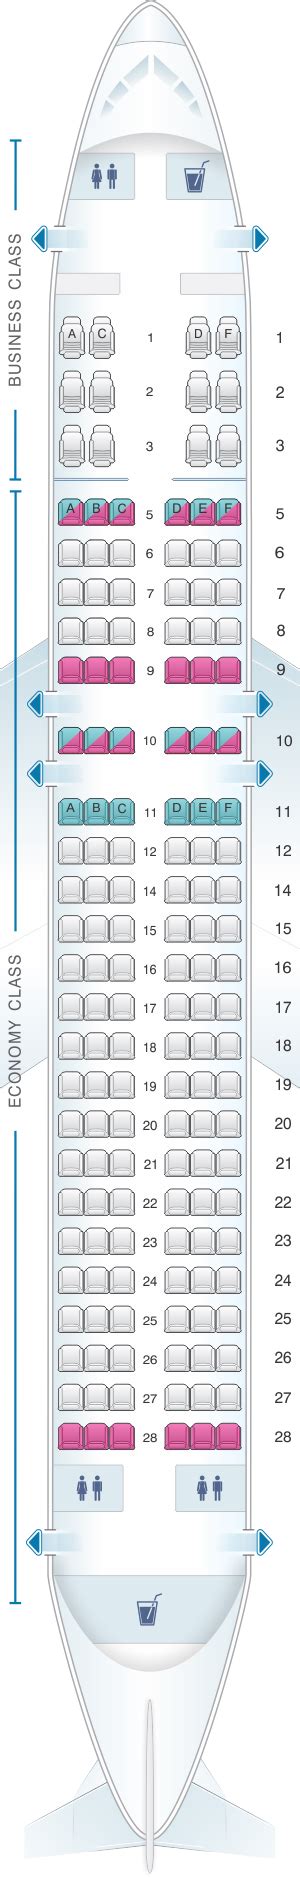 Seat Map Silkair Airbus A320 200 Seatmaestro